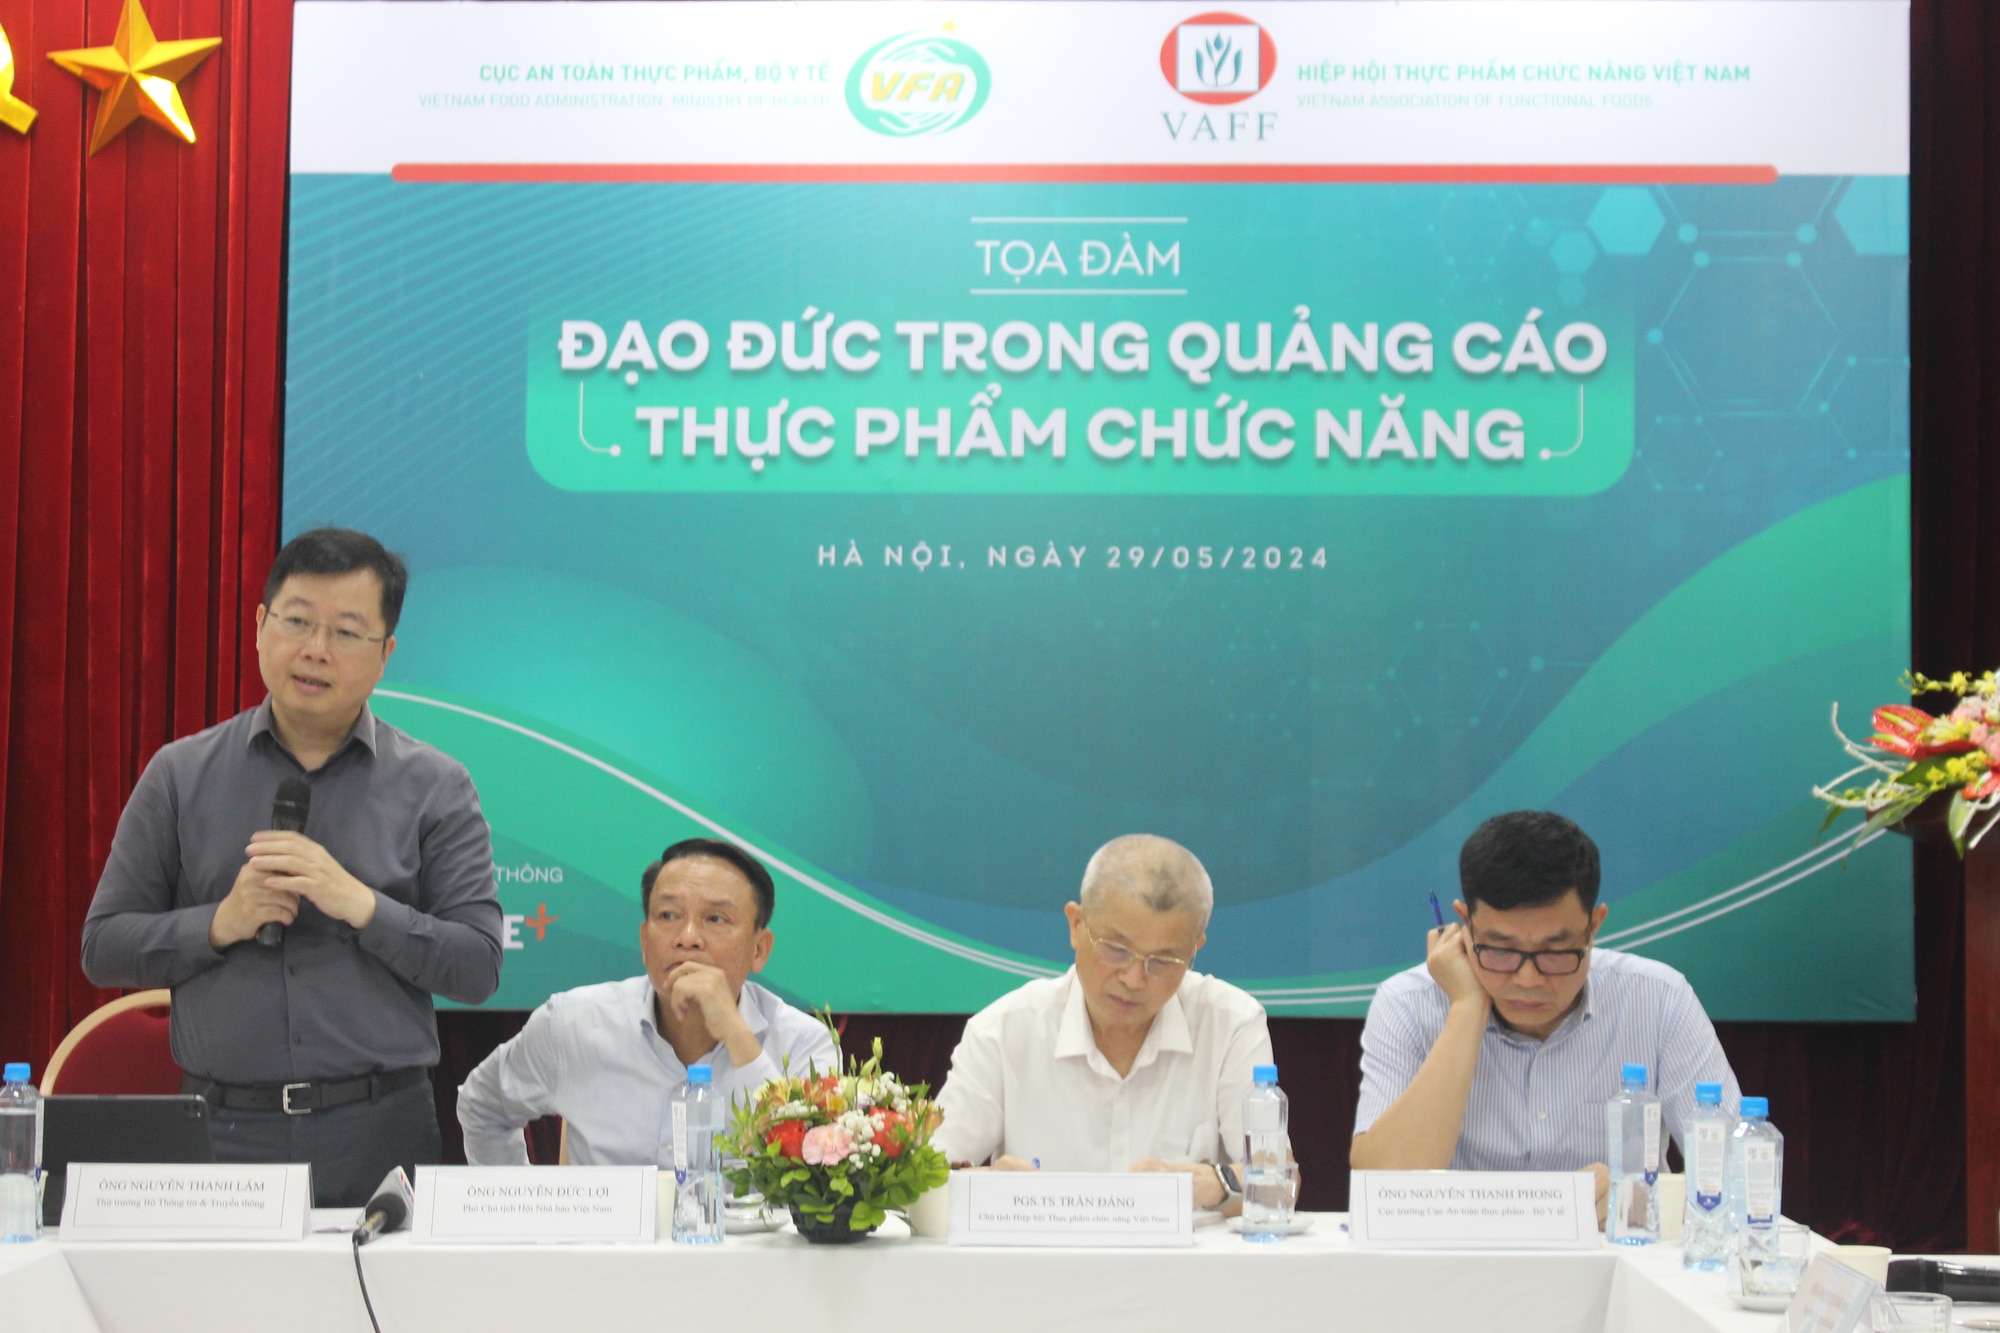 Thứ trưởng Bộ Thông tin và Truyền thông Nguyễn Thanh Lâm chia sẻ tại tọa đàm Đạo đức trong quảng cáo thực phẩm chức năng - Ảnh: D.LIỄU